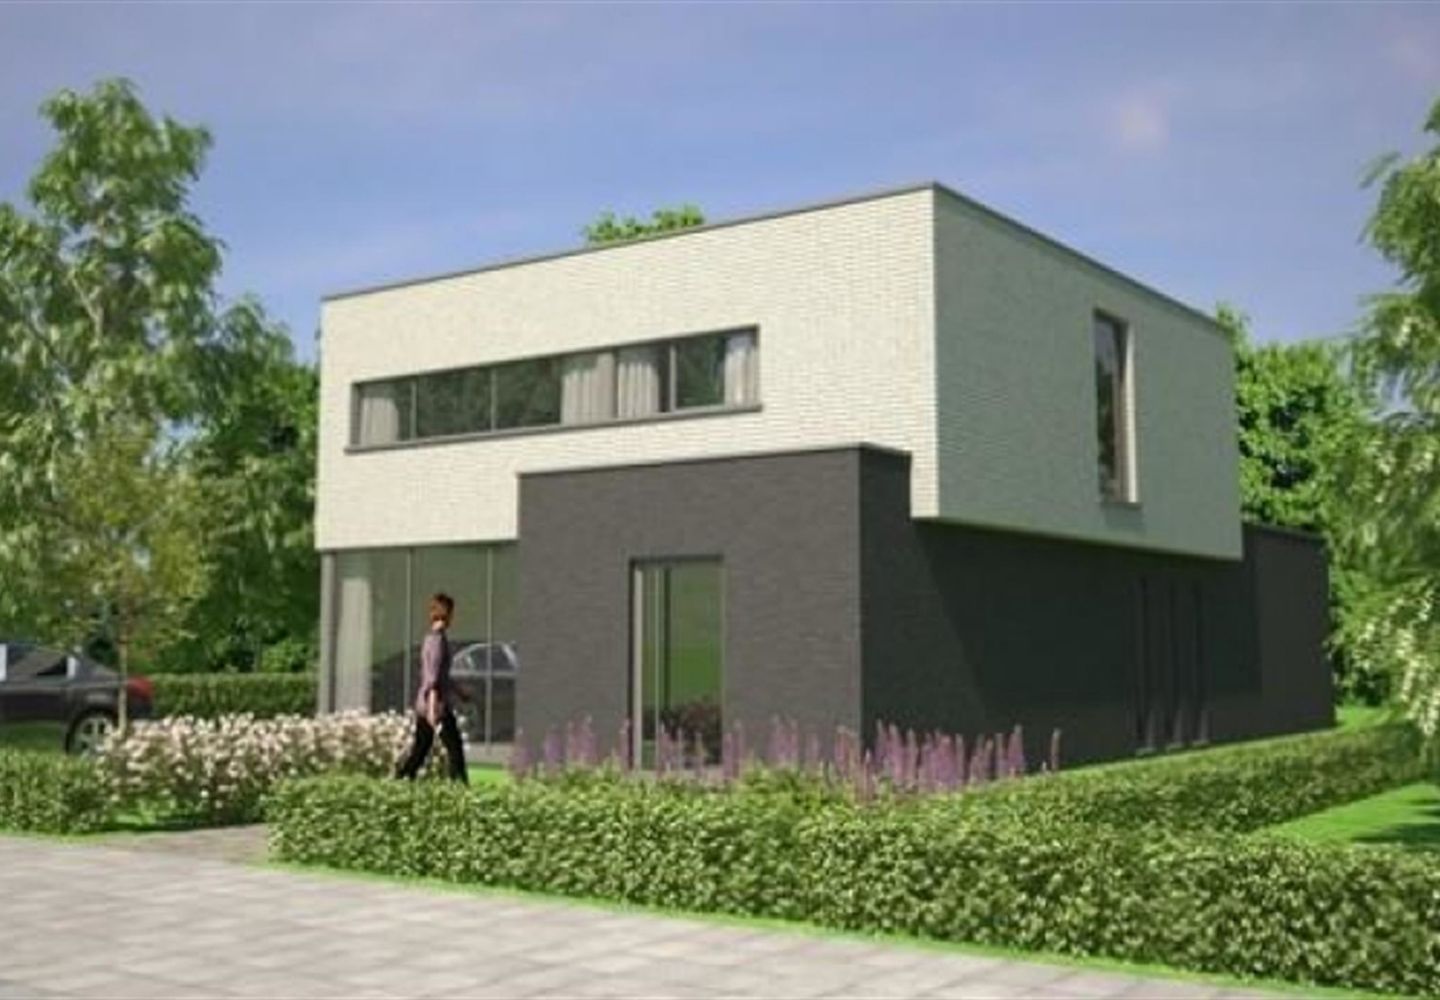 CASALINA REAL ESTATE –propose à la vente des nouvelle construction situées dans un quartier résidentiel, à la fois rural et verdoyant, à 2 km du centre de Sint-Pieters-Leeuw. Large gamme de supermarchés dans un rayon de 2 km. Les maison sont conç